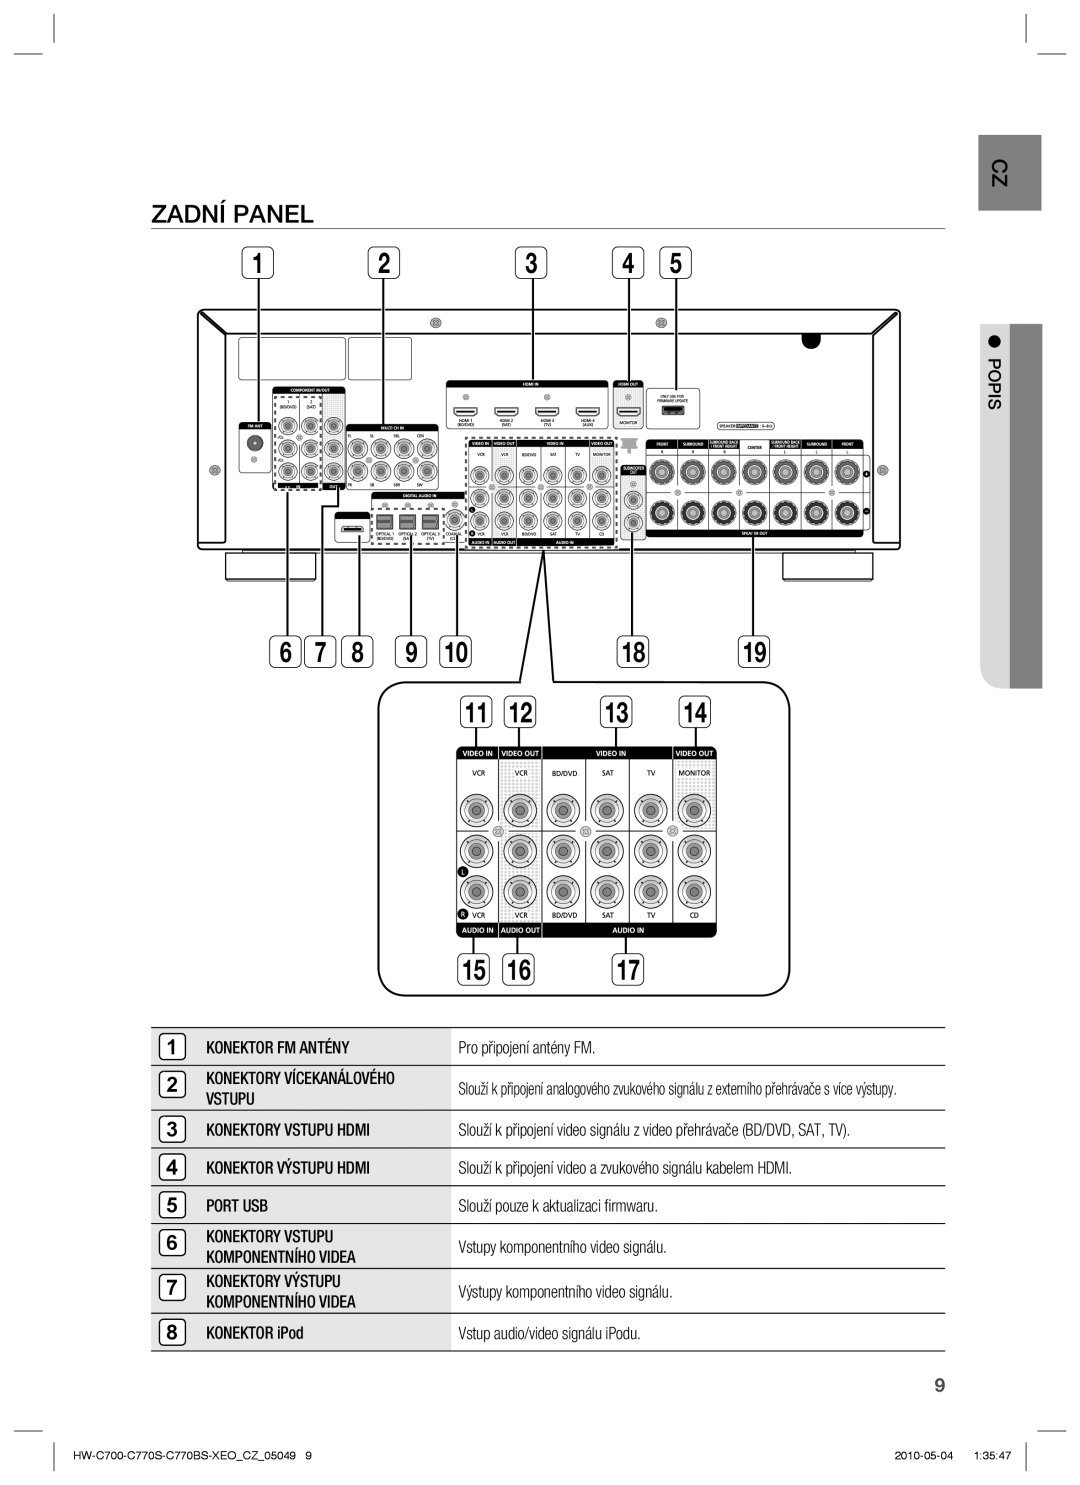 Samsung HW-C700/EDC, HW-C770S/EDC, HW-C770S/XEE manual Zadní Panel, Konektory Vstupu Hdmi, Konektor Výstupu Hdmi 